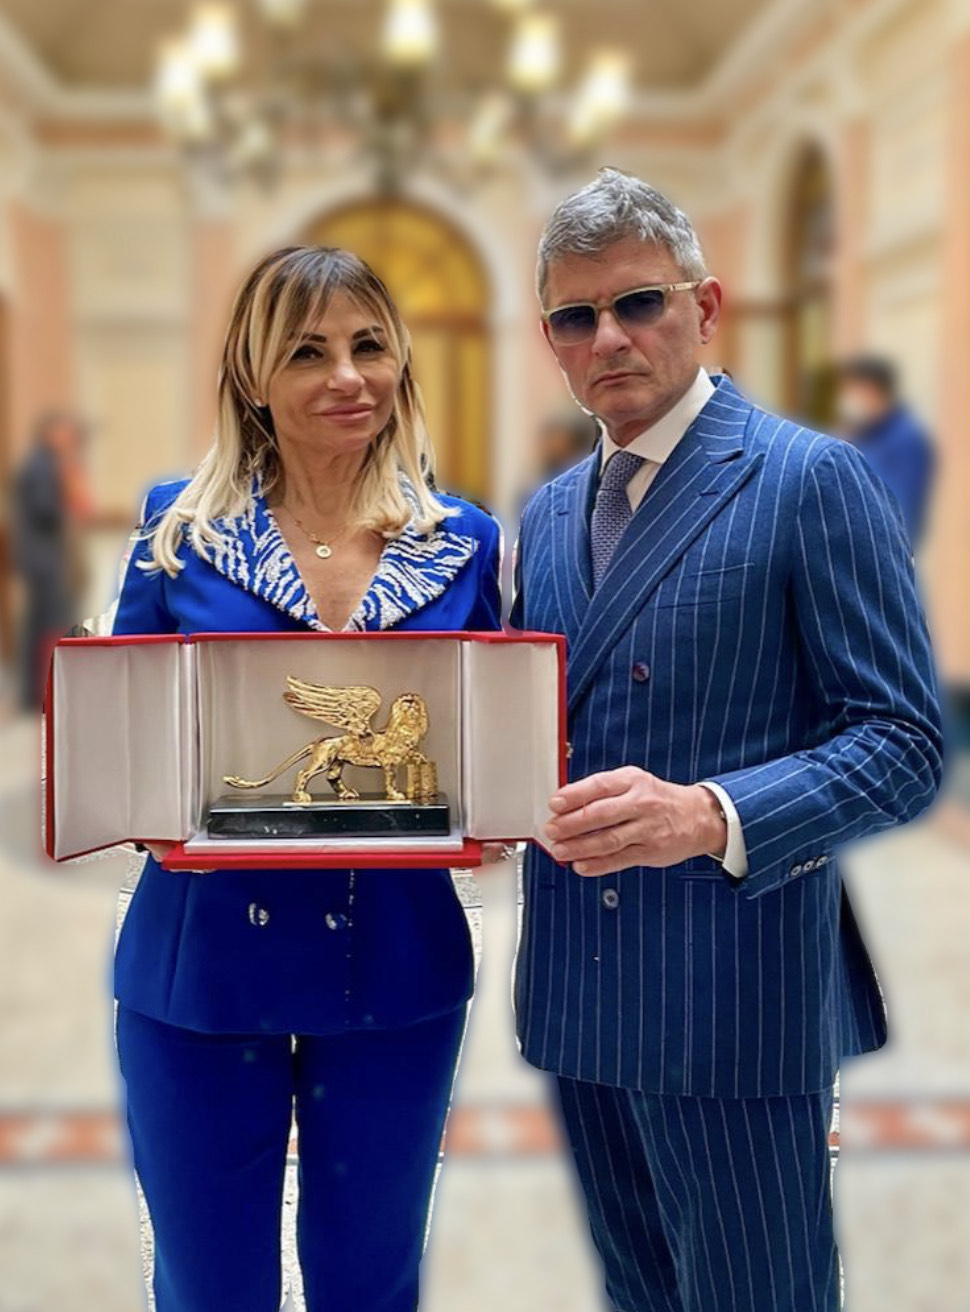 Assunta Pacifico conquista il prestigioso Leone doro di Venezia: “Che emozione portare questo premio a Napoli